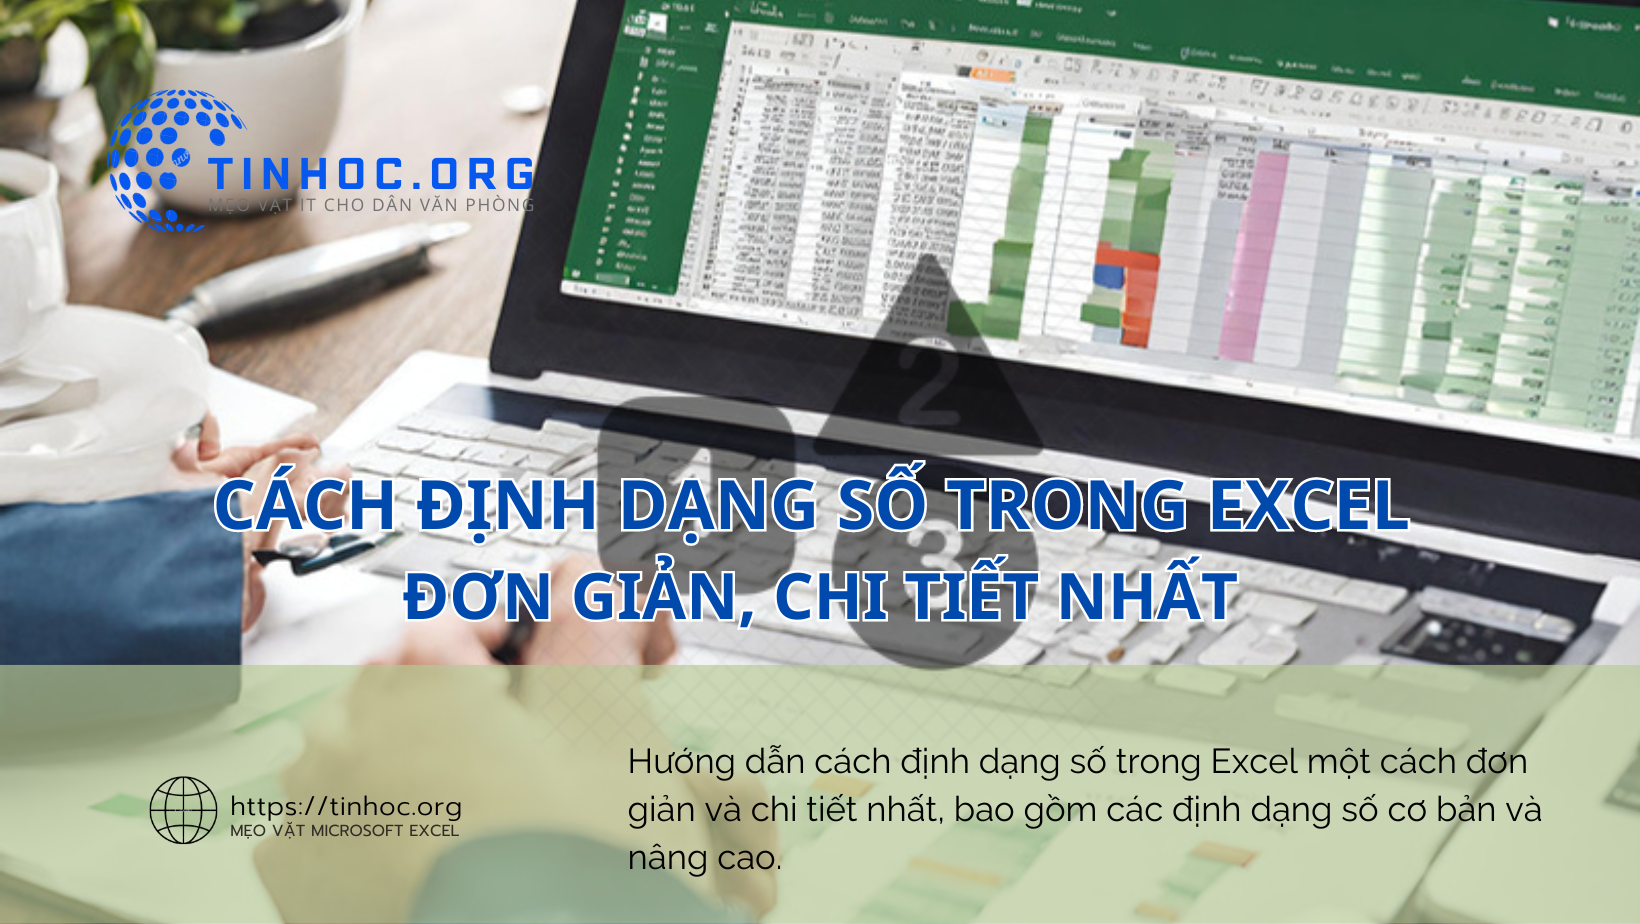 Hướng dẫn cách định dạng số trong Excel một cách đơn giản và chi tiết nhất, bao gồm các định dạng số cơ bản và nâng cao.